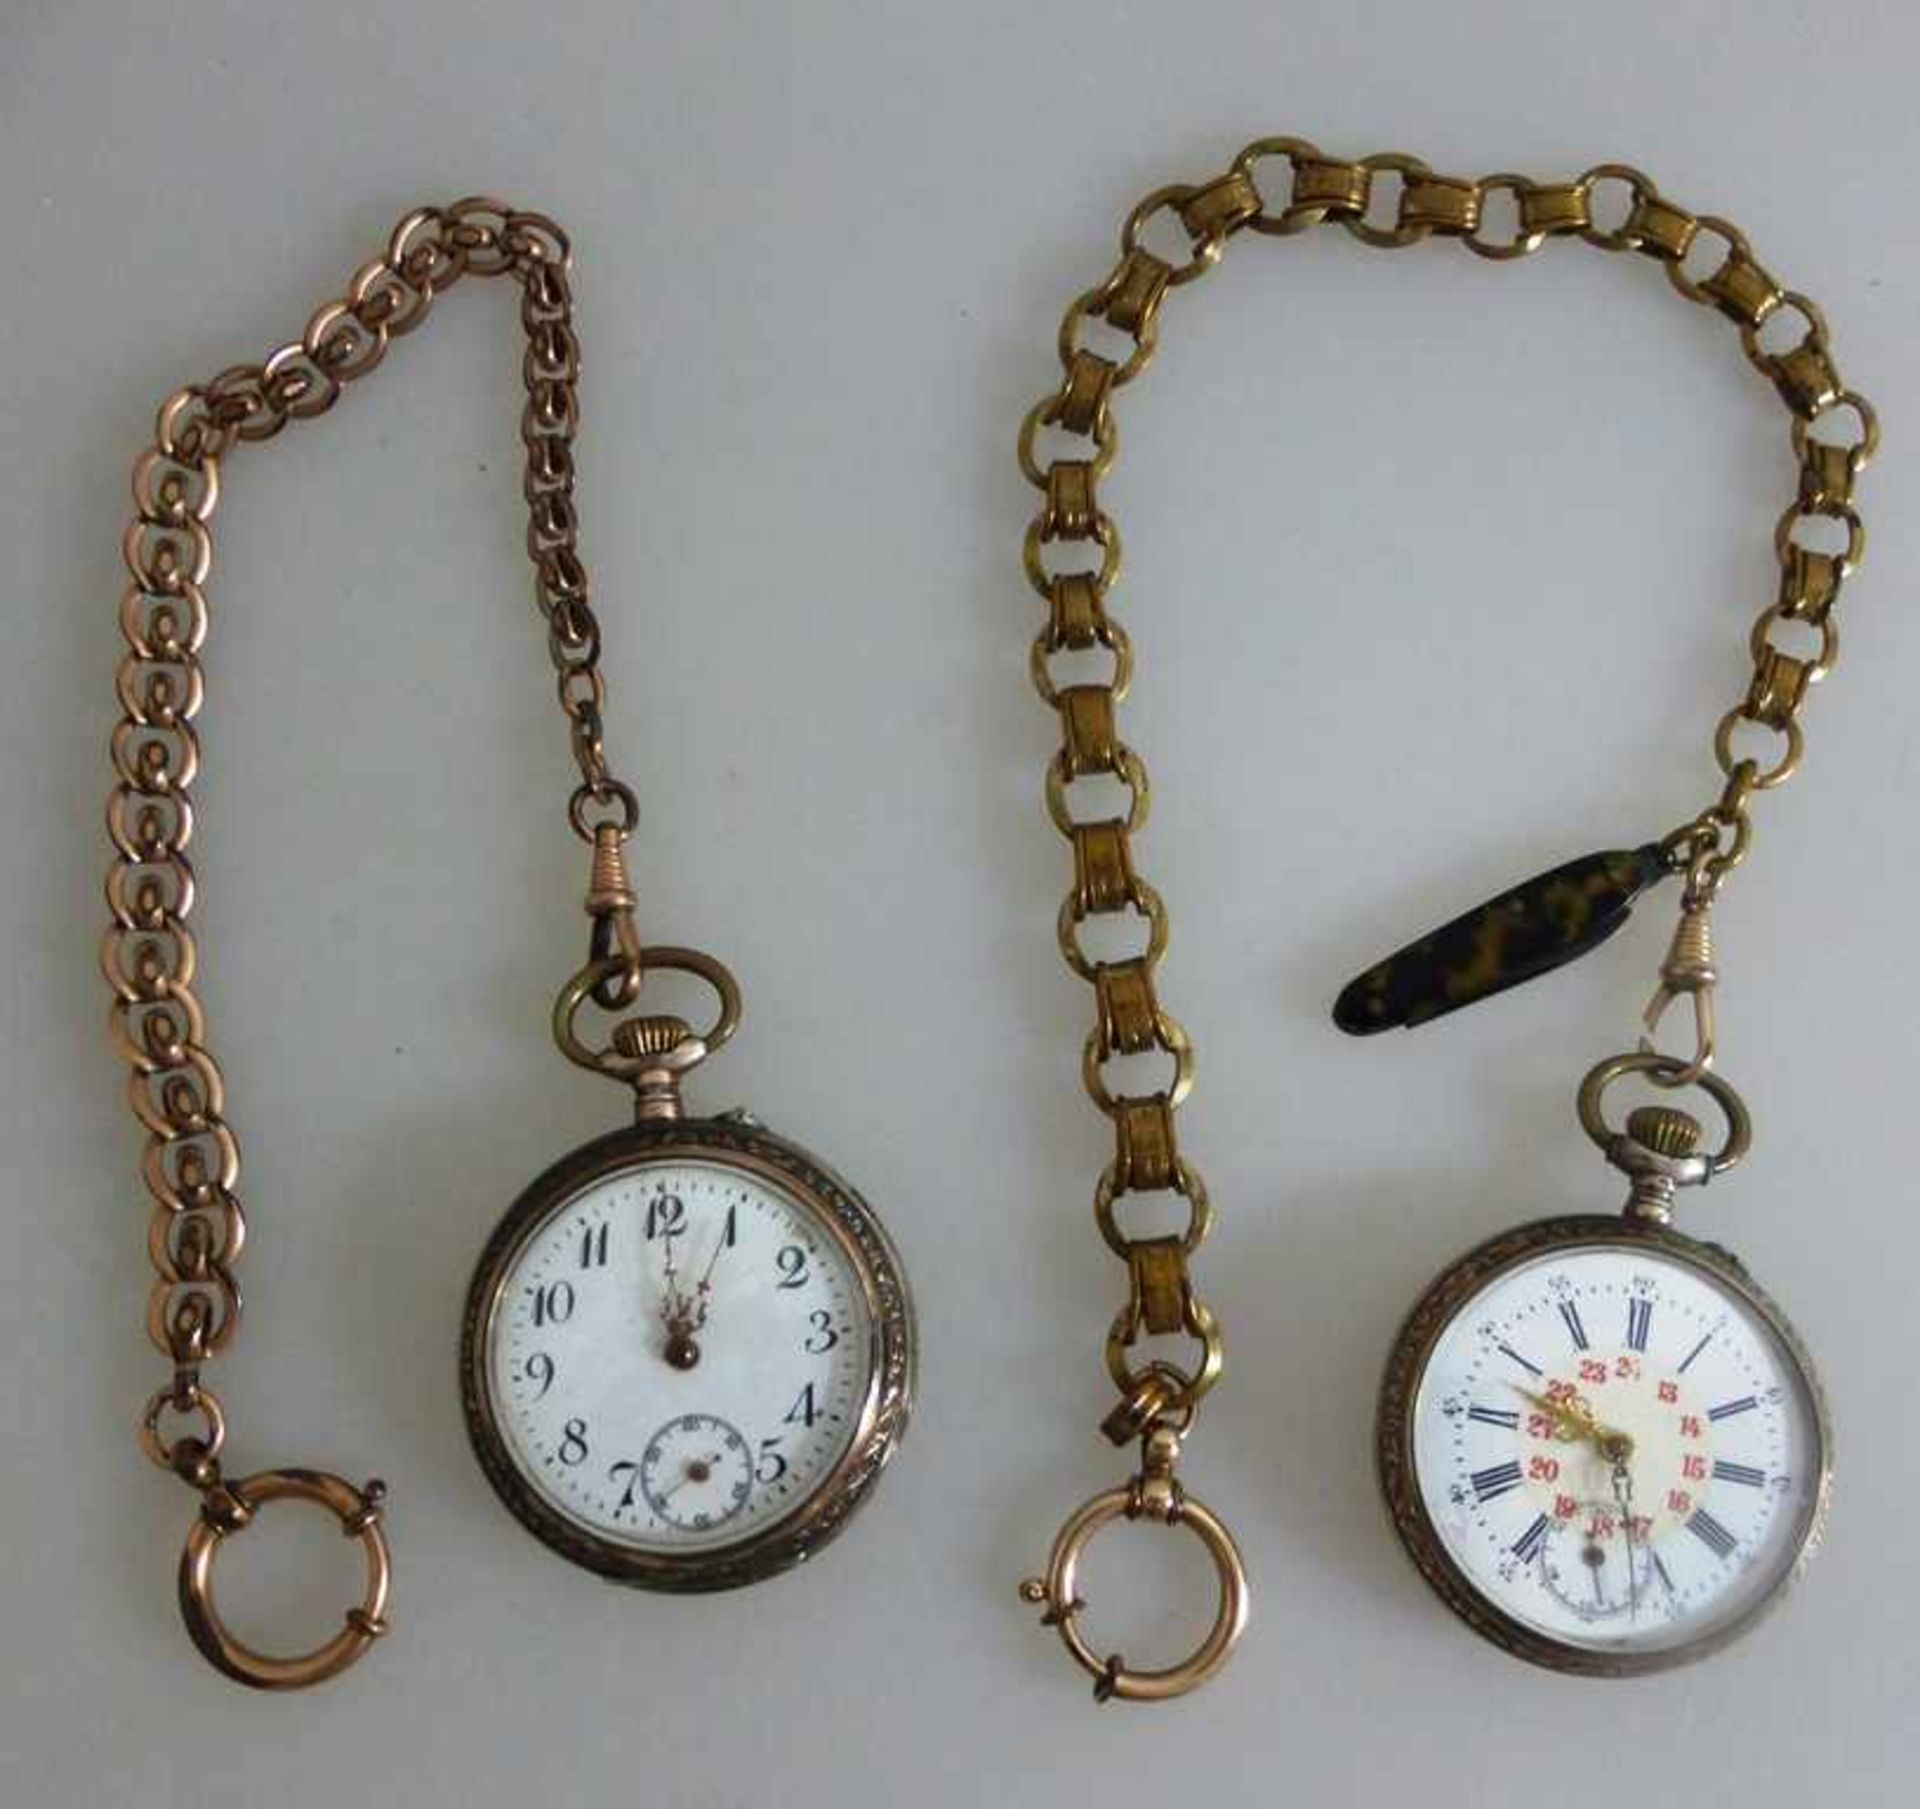 2 Taschenuhren um 1900, Silbergehäuse, je d. ca. 45mm, jeweils mit Uhrenkette, Werkelaufen an,